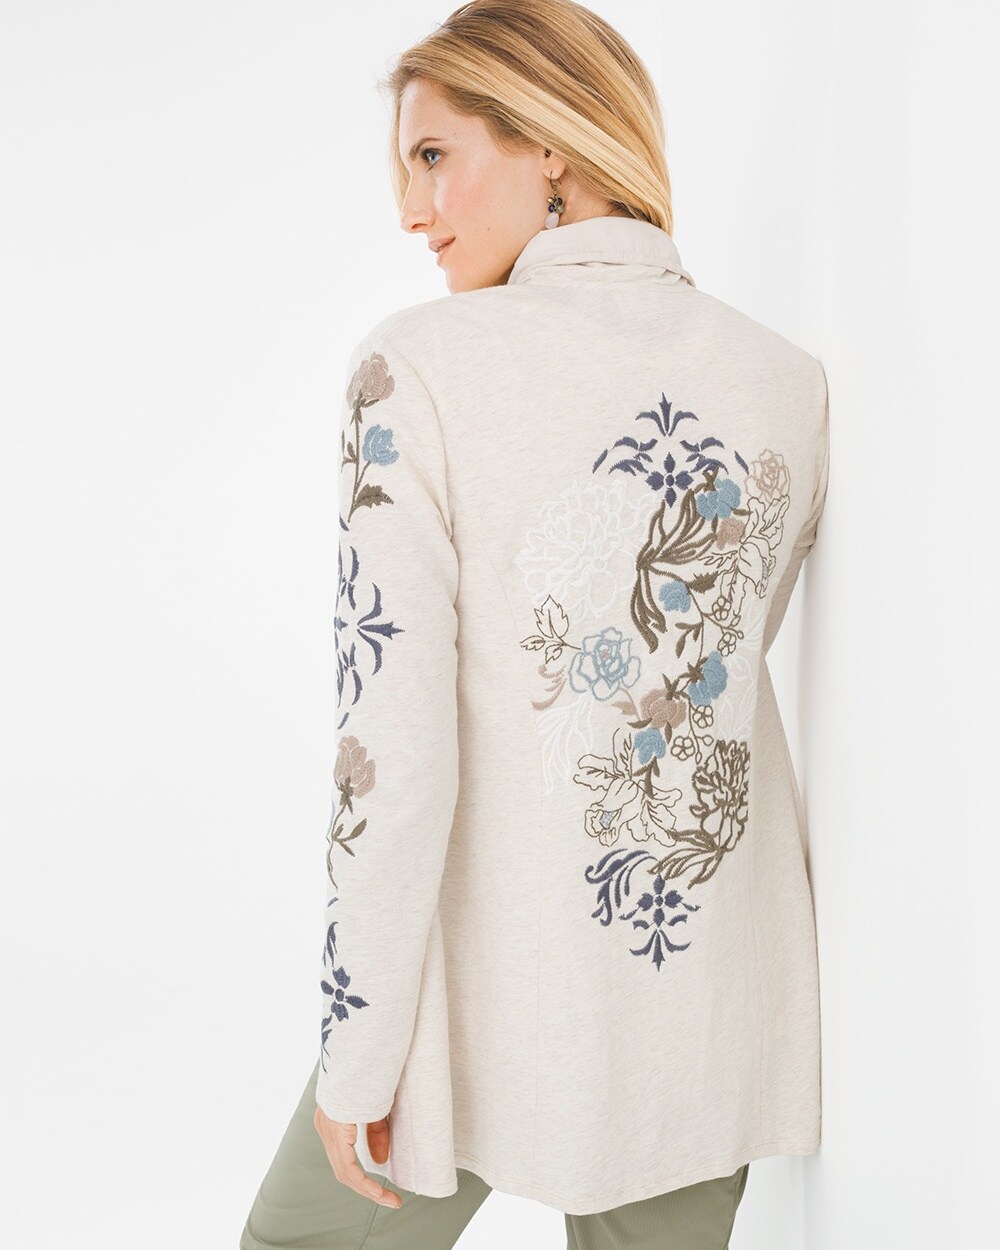 Zenergy Embroidered Knit Jacket